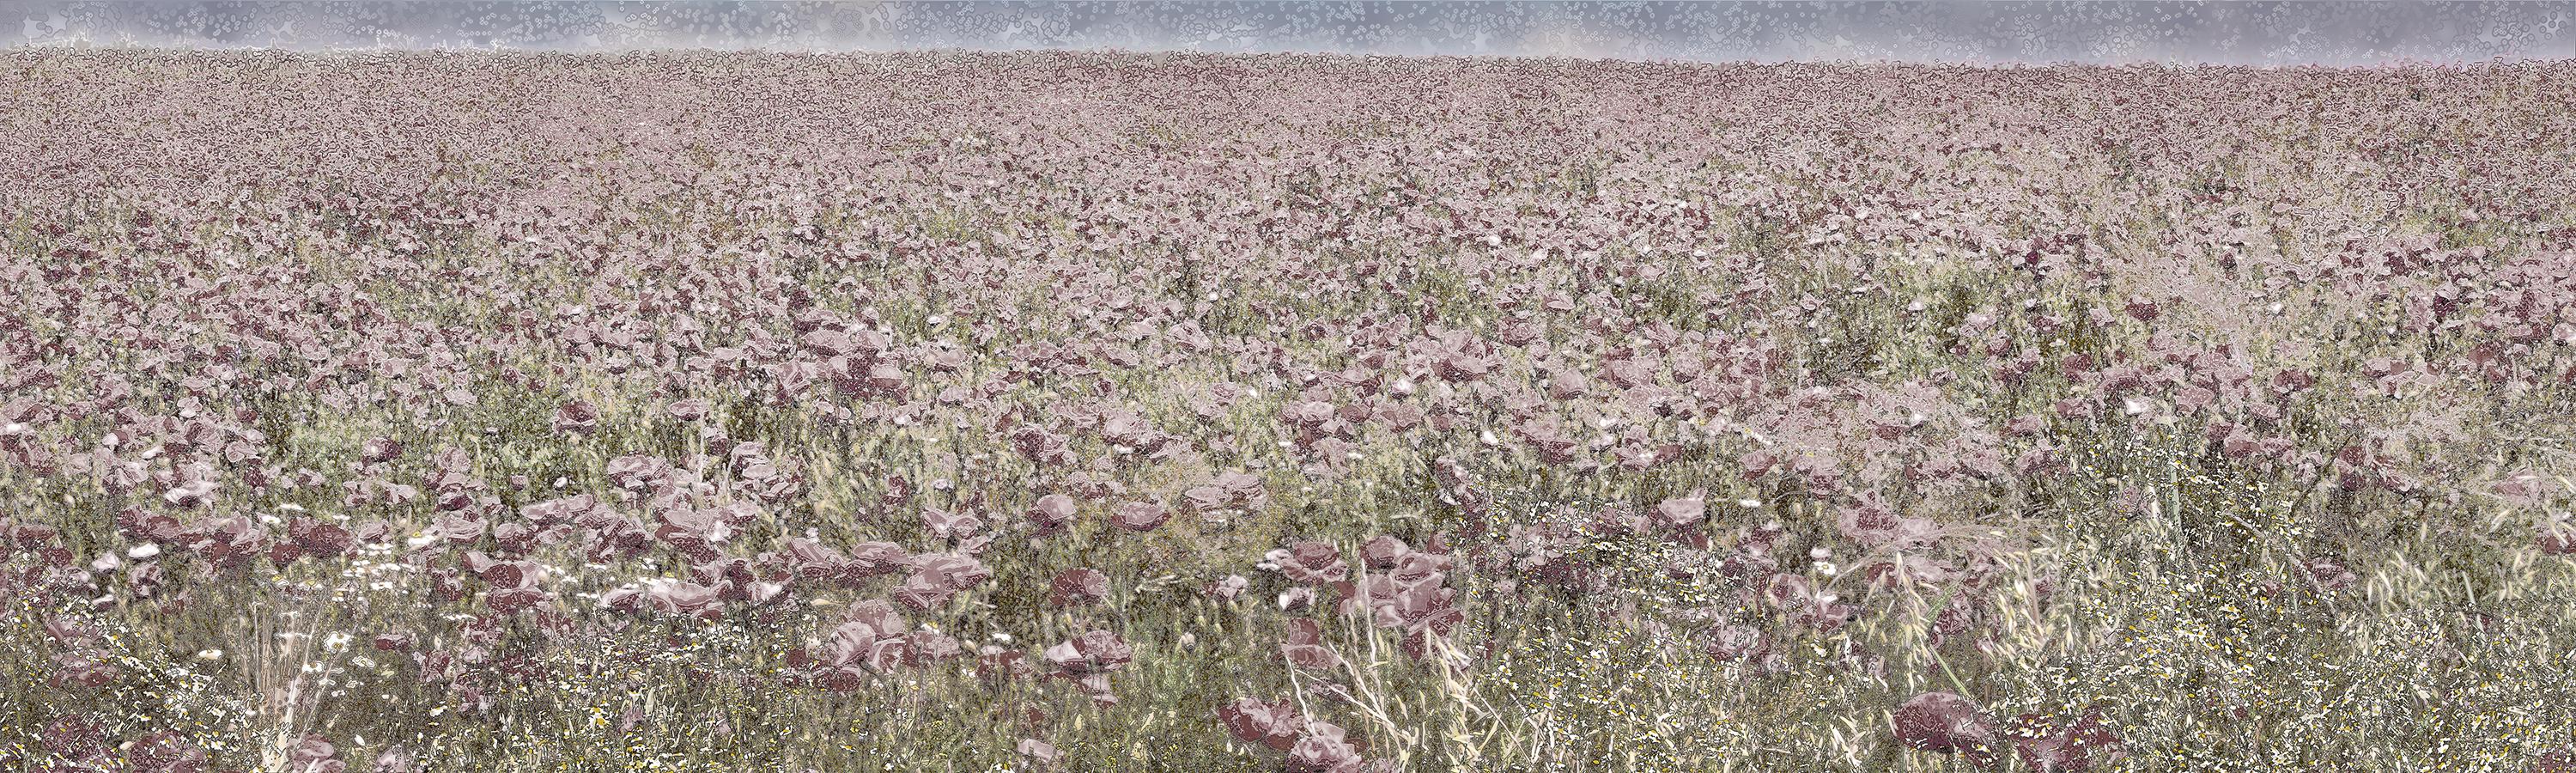 Aziz + Cucher Landscape Print - Scenapse Field 11 - landscape, photography, print, metallic paper, contemporary